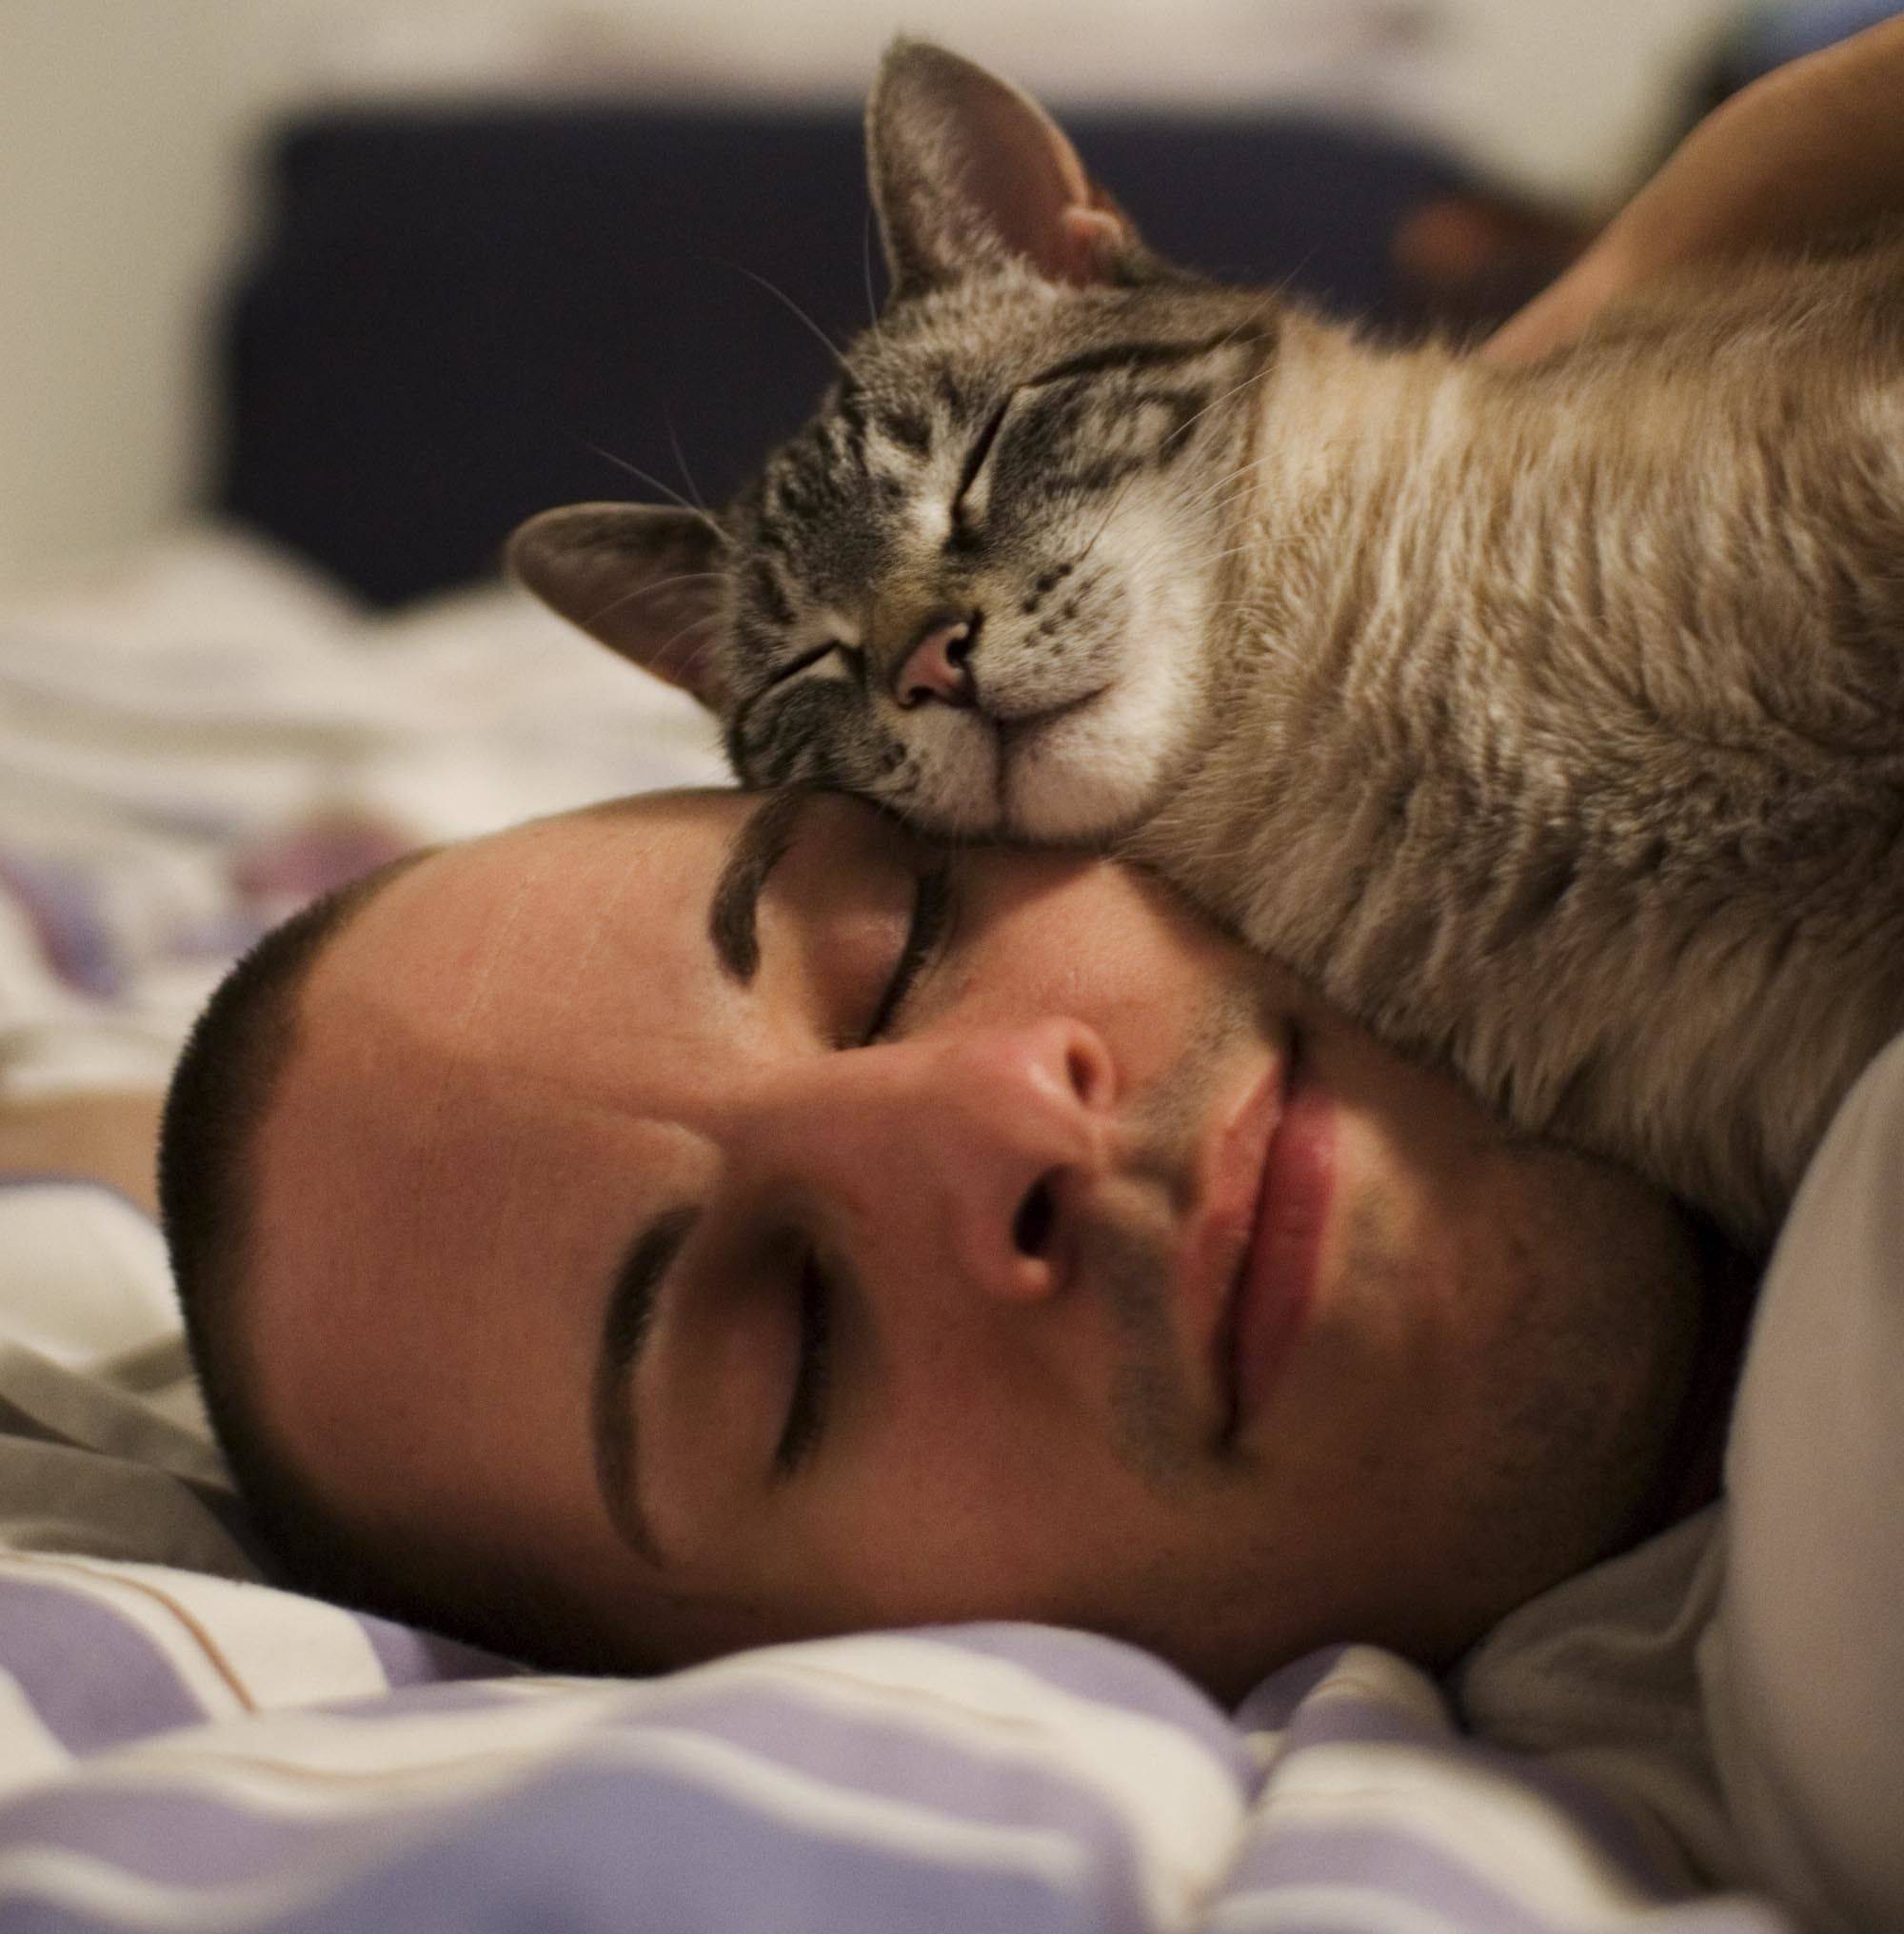 Если кошка спит на кровати хозяина, что гласит примета, если она в ногах и если над головой